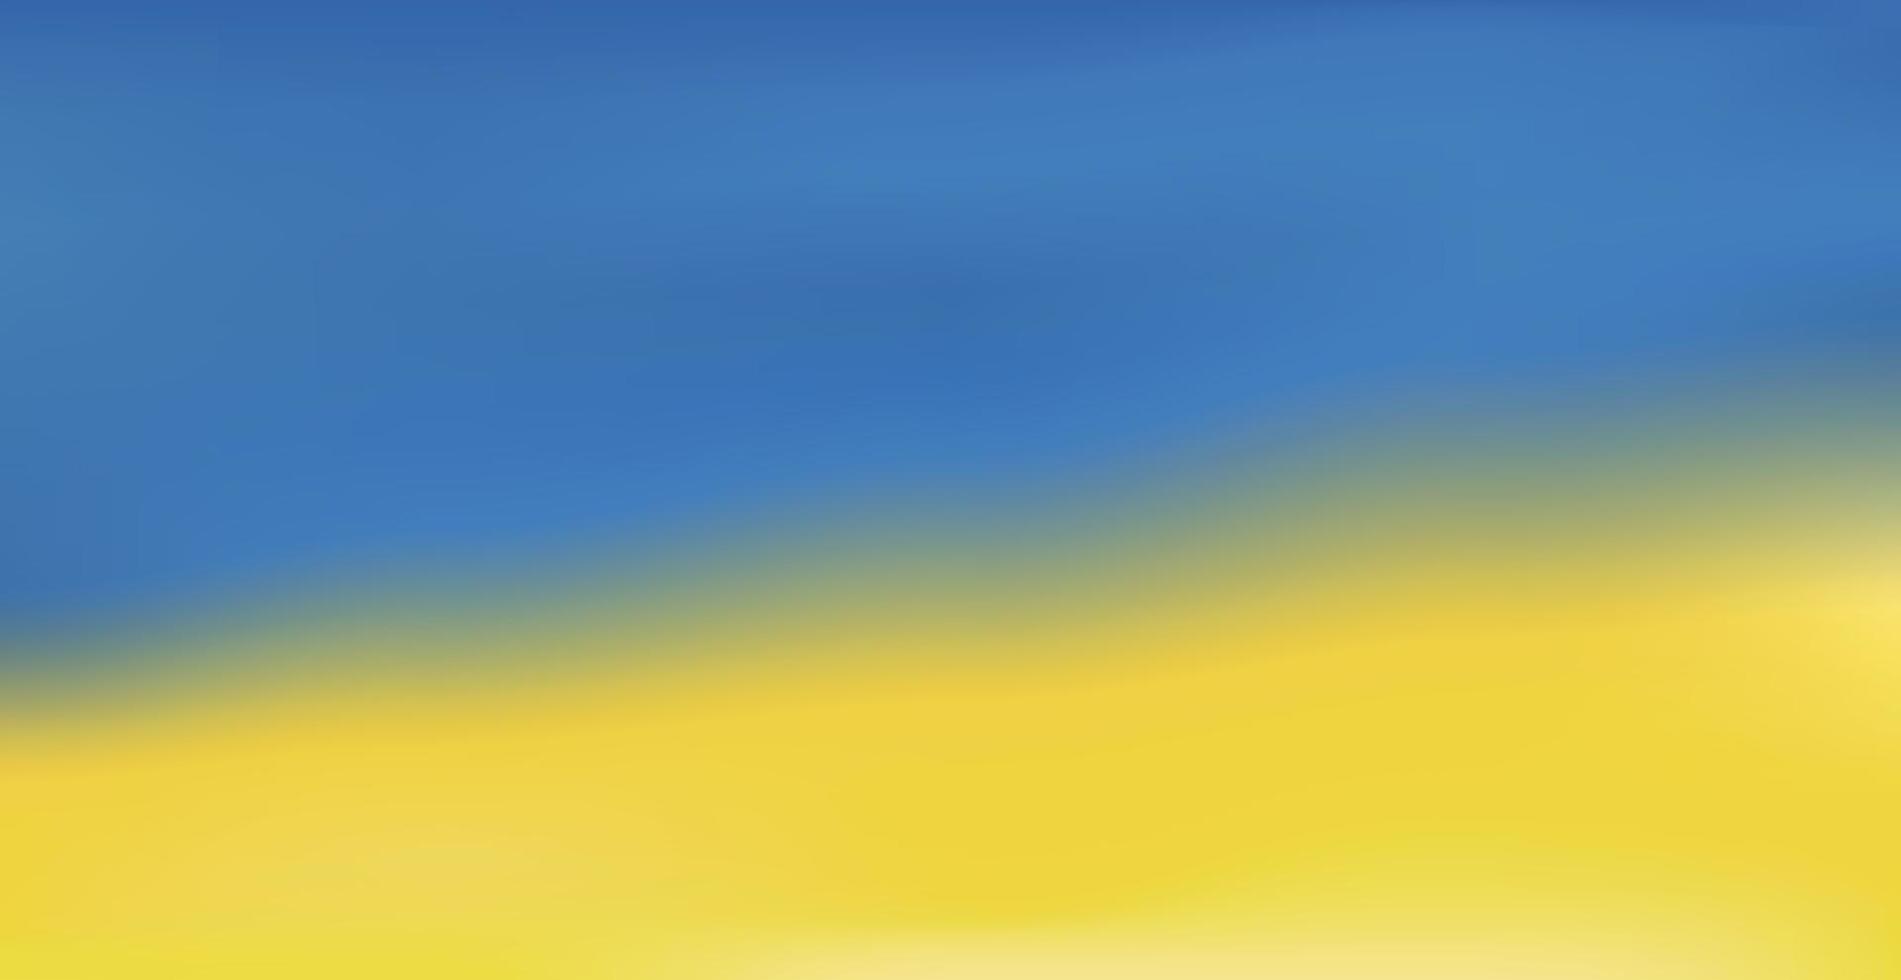 Hintergrund mit Farbverlauf blau-orange Flagge der Ukraine - Vektor